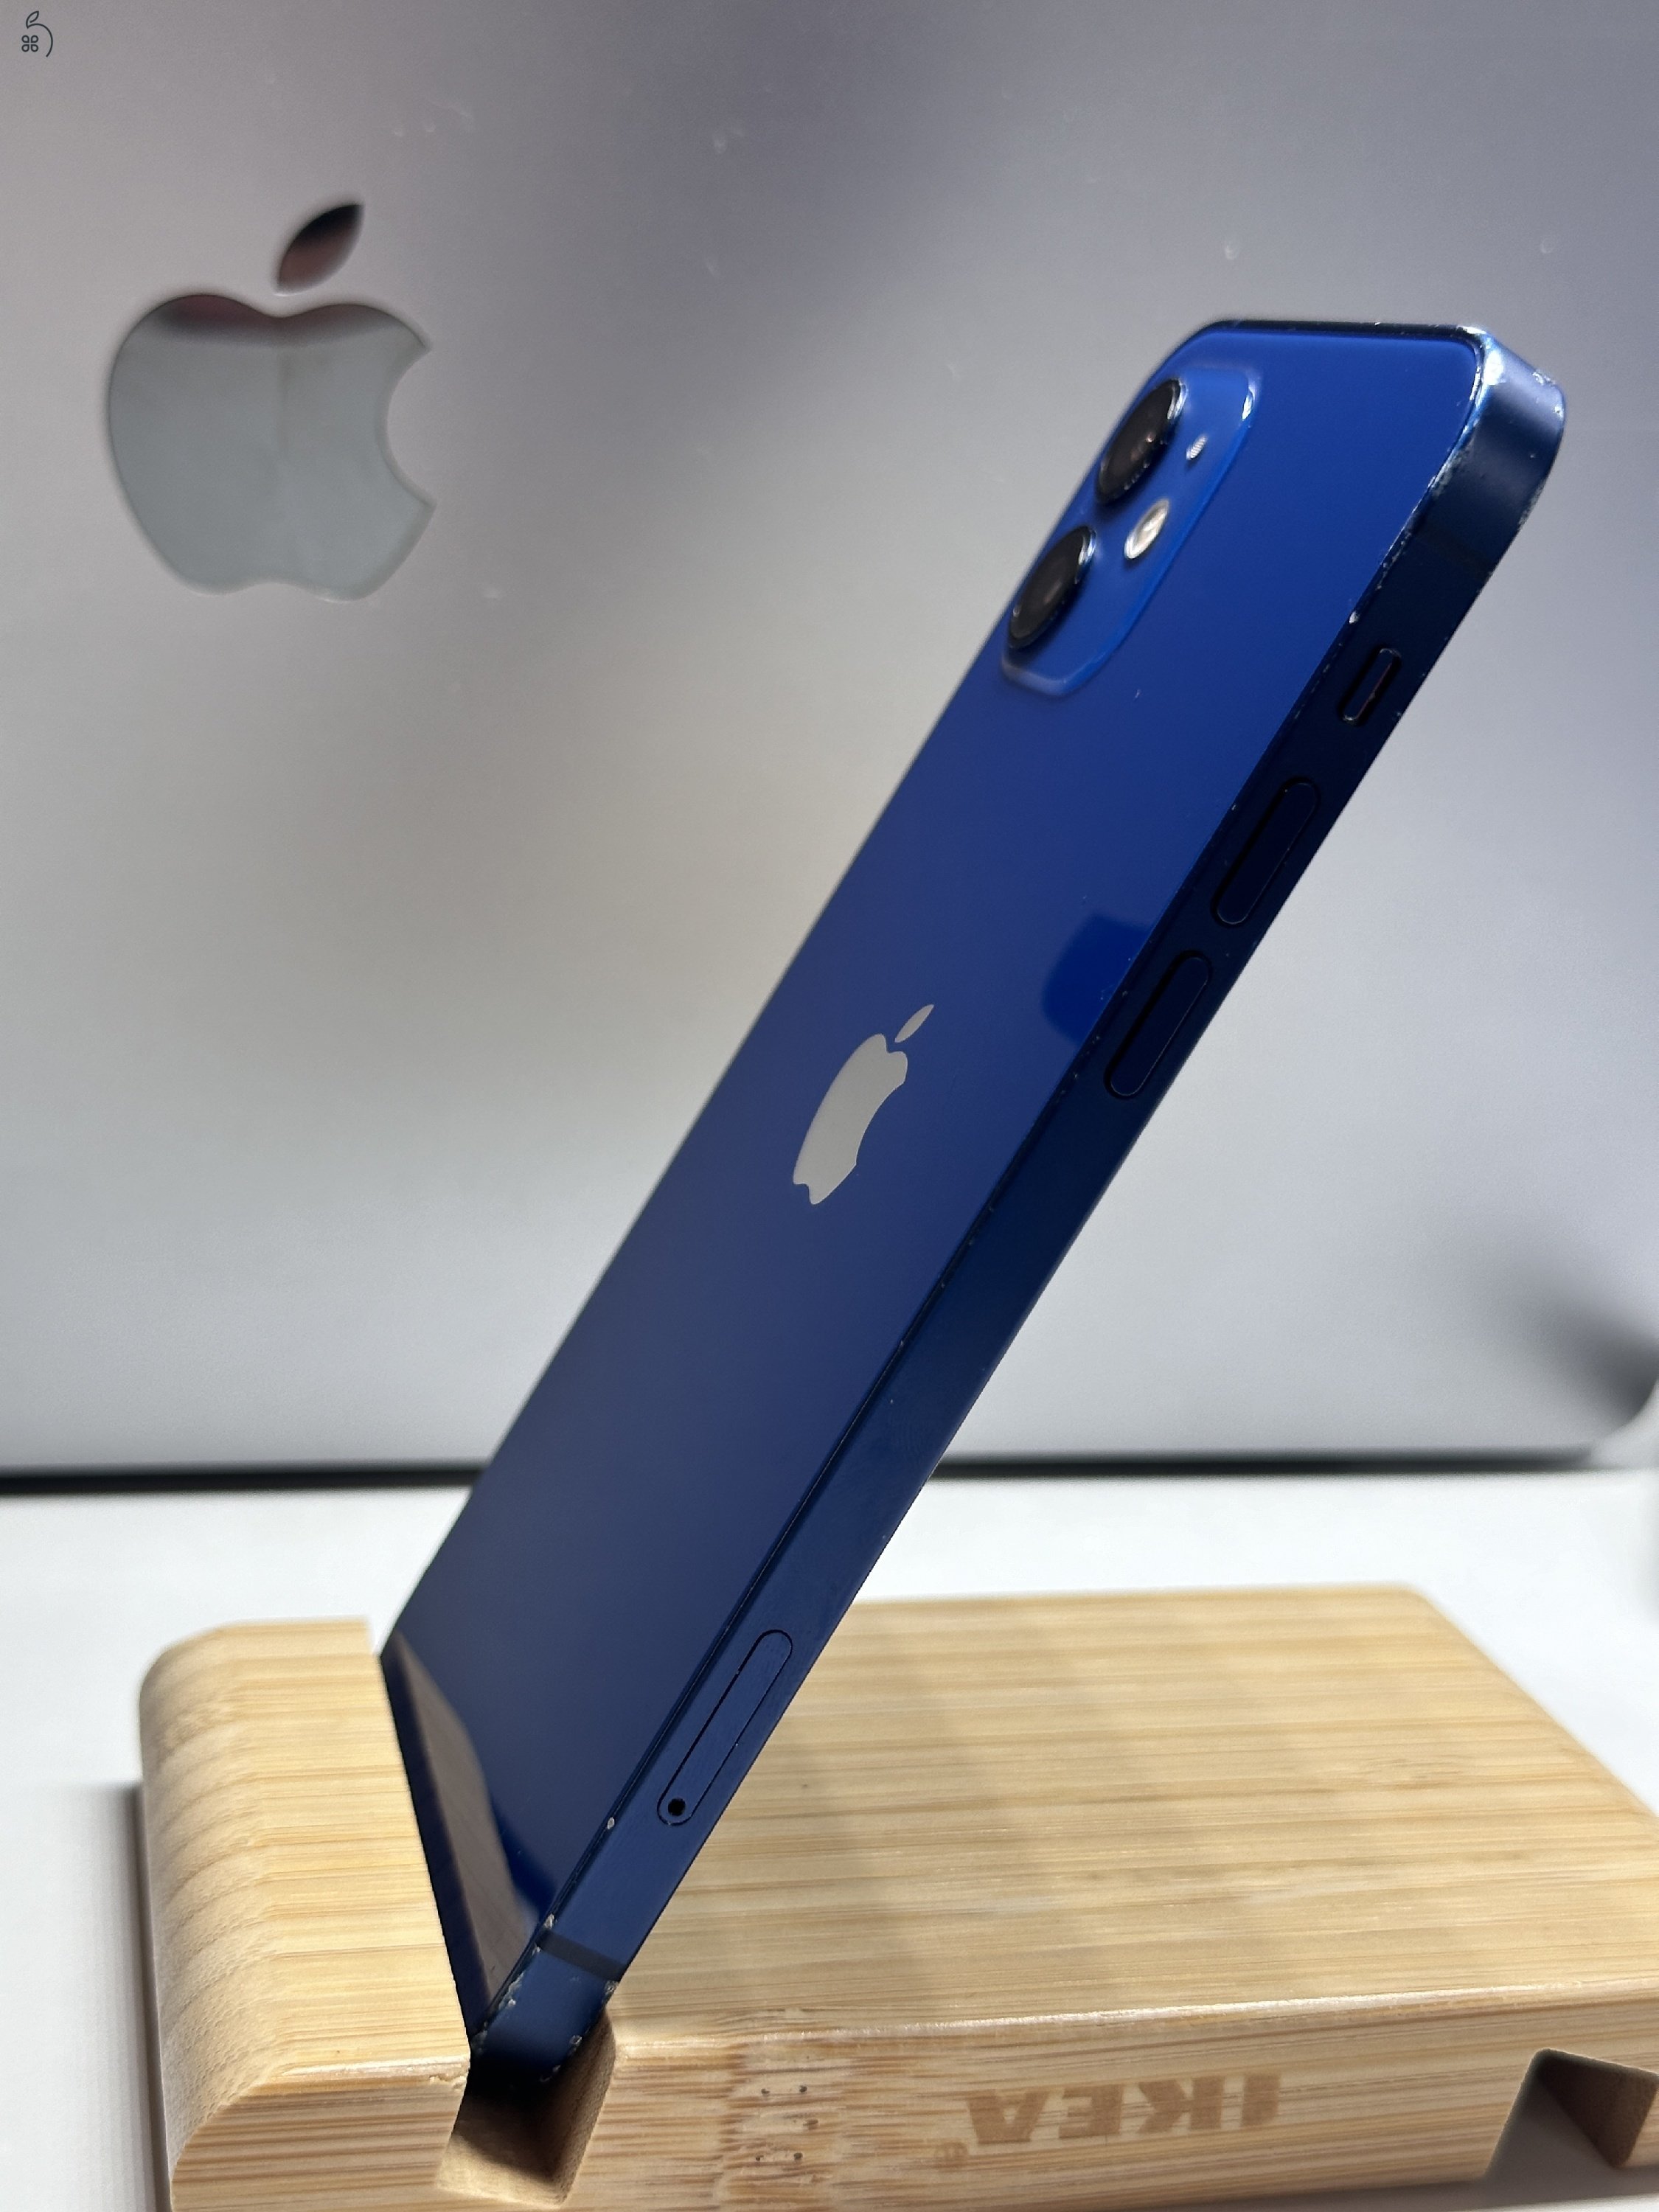 iPhone 12 64GB, Kék, Szép állapotú, Független